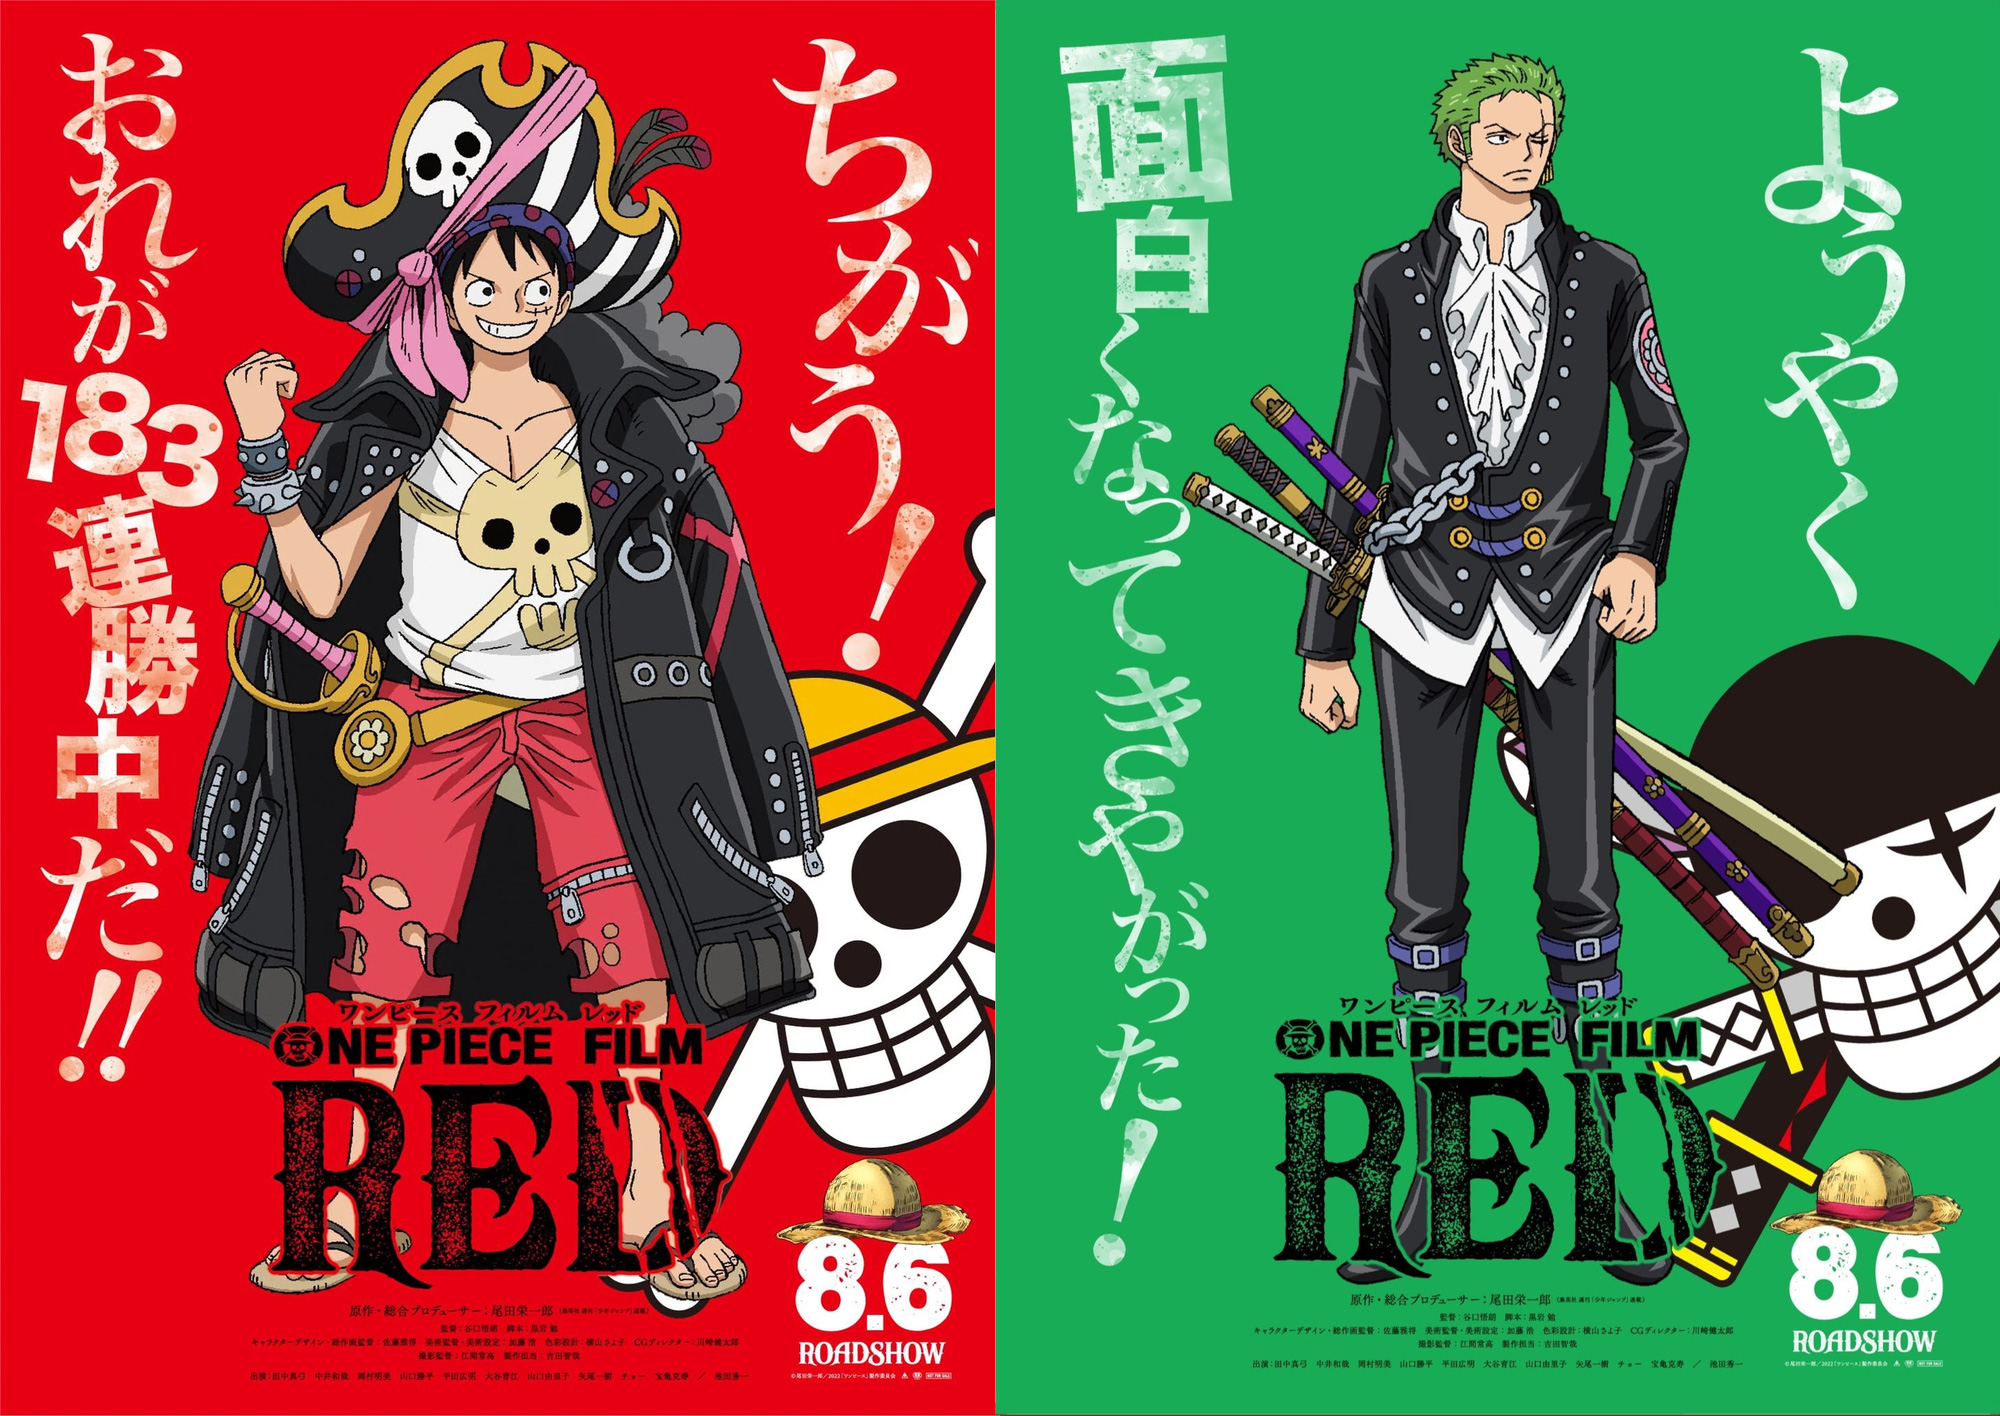 One Piece Film Red công bố tạo hình nhân vật, hình dạng trái ác quỷ của Katakuri và Kid được tiết lộ